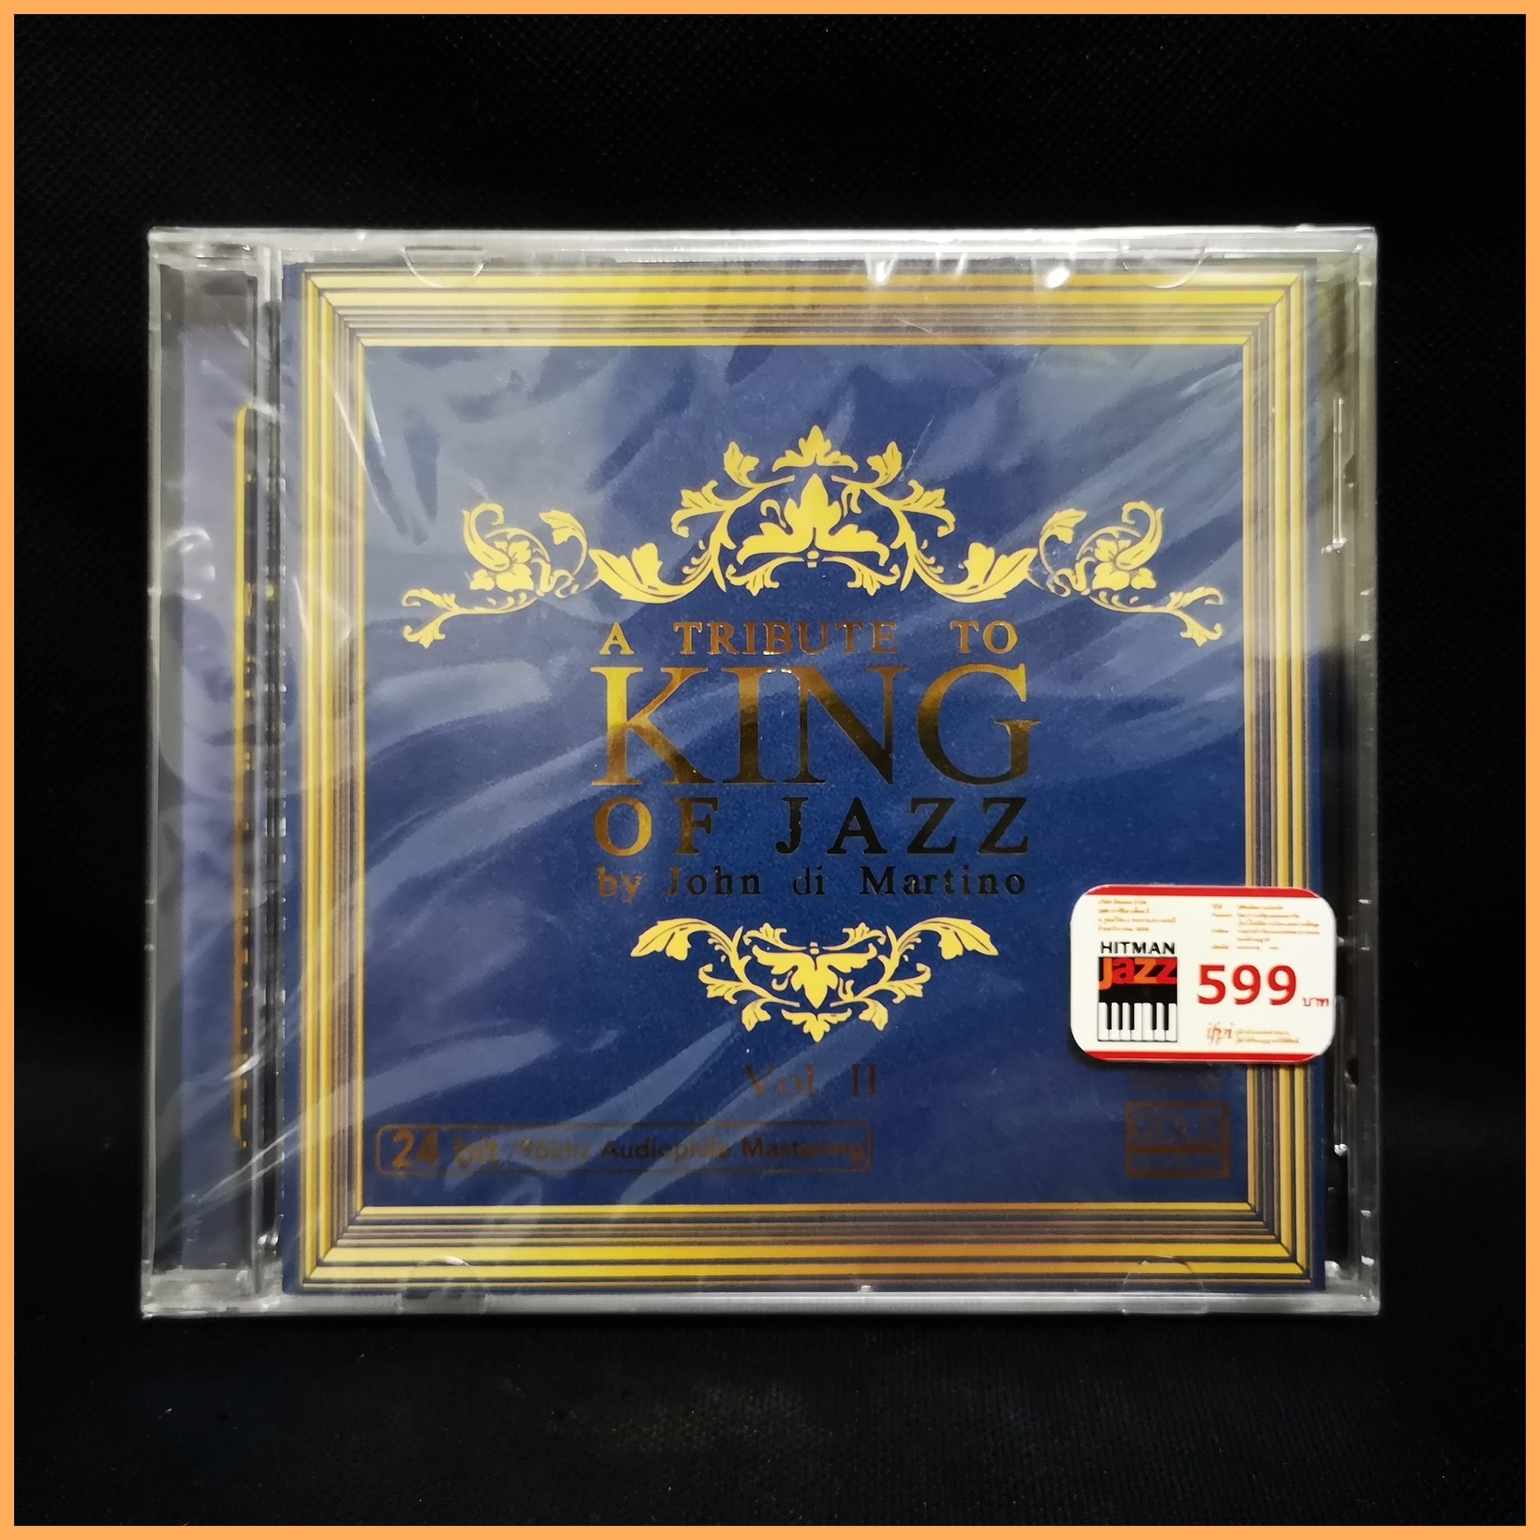 CD อัลบั้มเพลงพระราชนิพนธ์ A Tribute to King of Jazz by John di Martino Vol.2 (CD 24 bit) (Audiophile) (แผ่นใหม่ มือหนึ่ง)